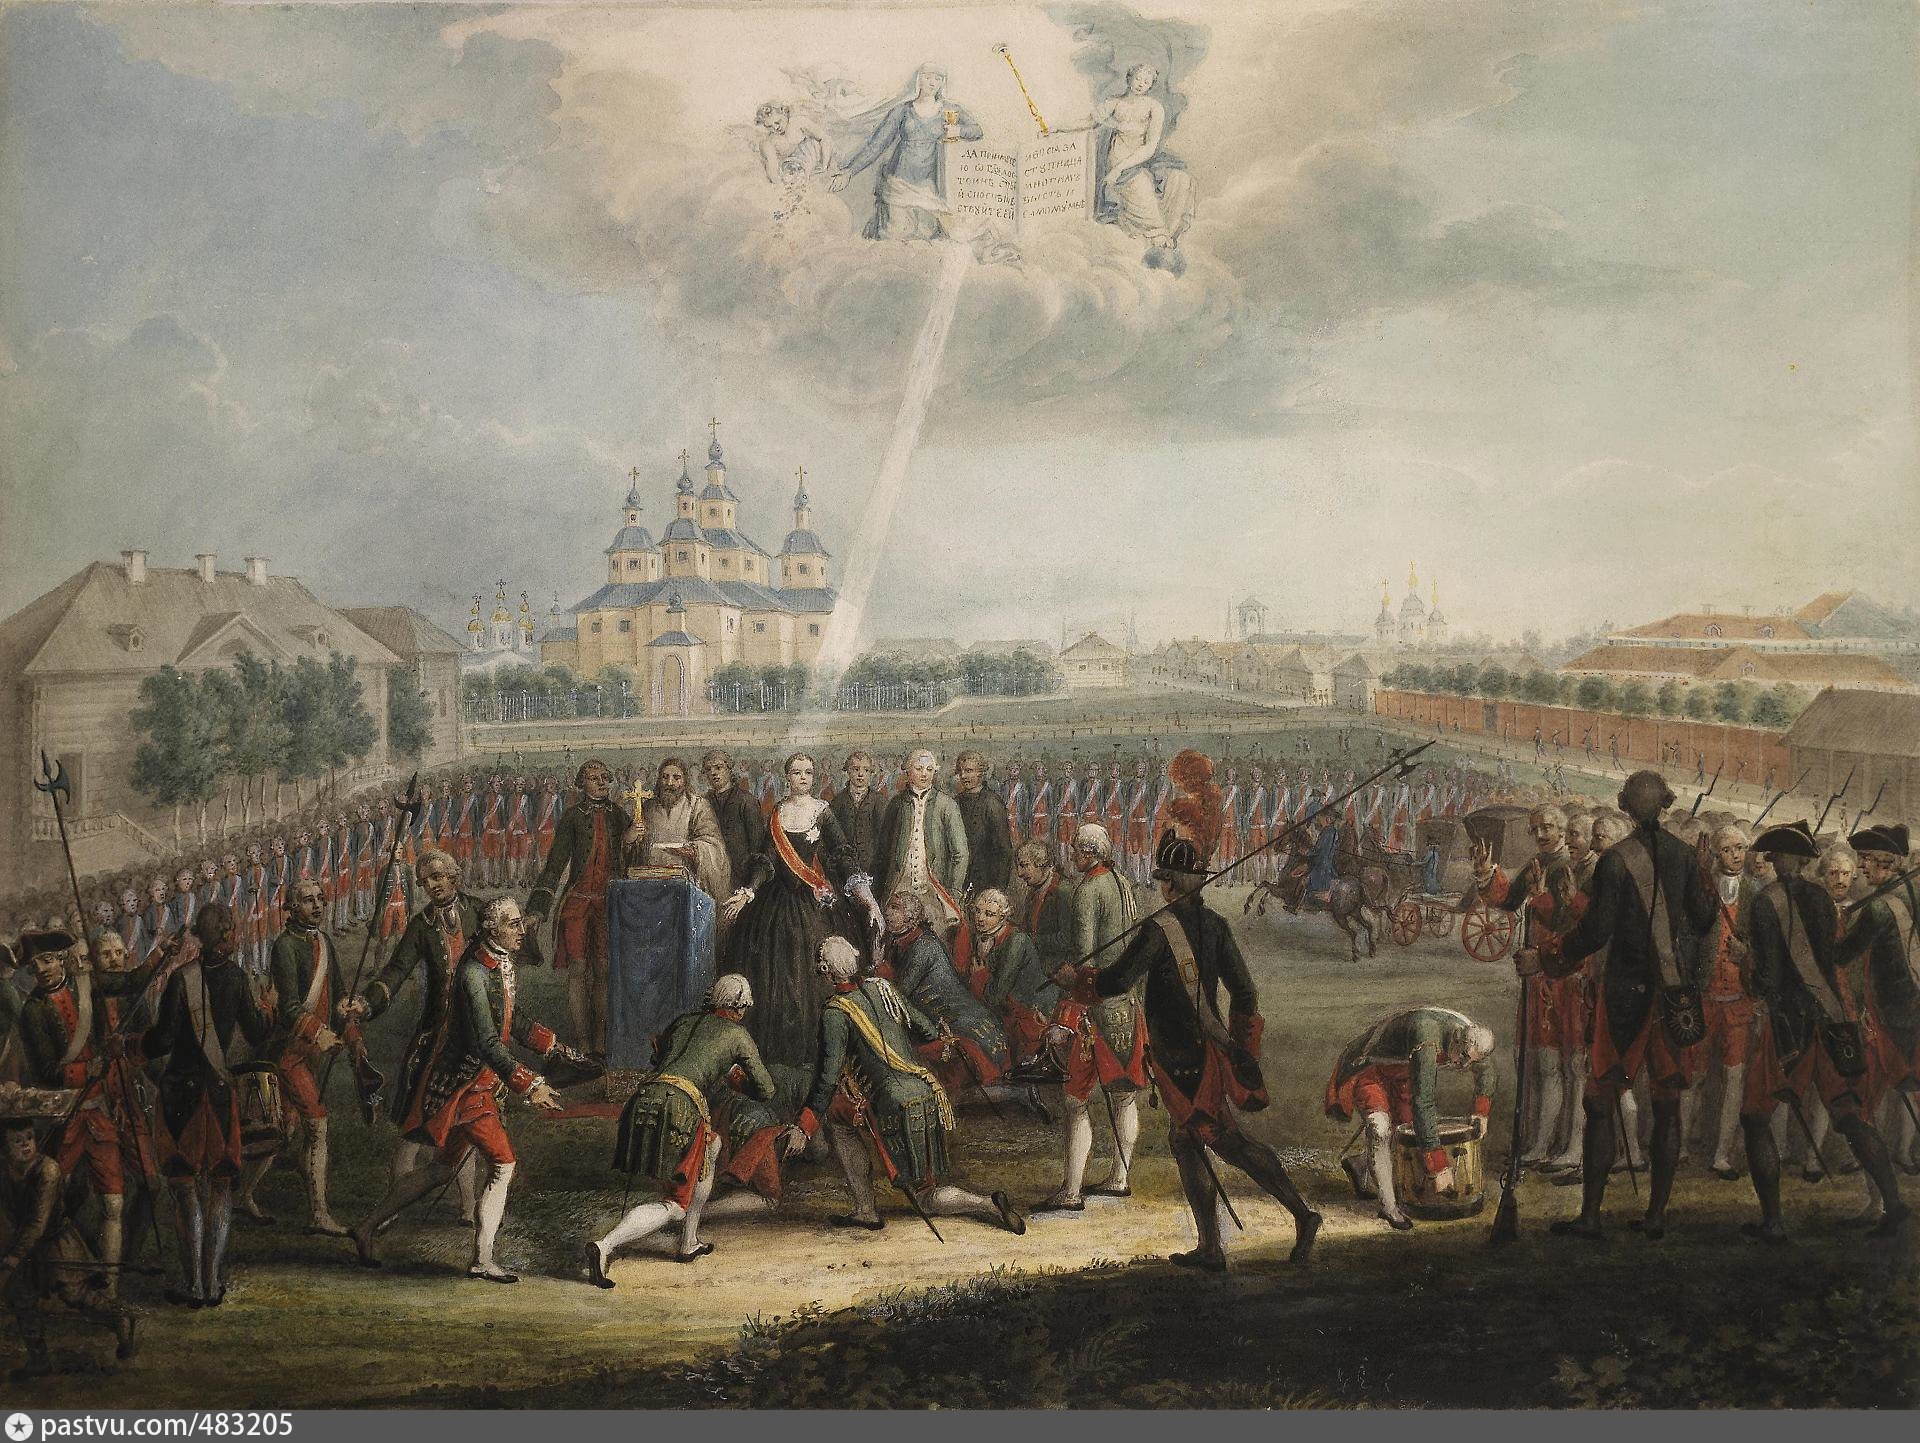 Революция 1 11. Дворцовый переворот 1762 Измайловский полк. Переворот 28 июня 1762 года Екатерины 2. Присяга Измайловского полка Екатерине II. Дворцовый переворот 28 июня 1762 года.